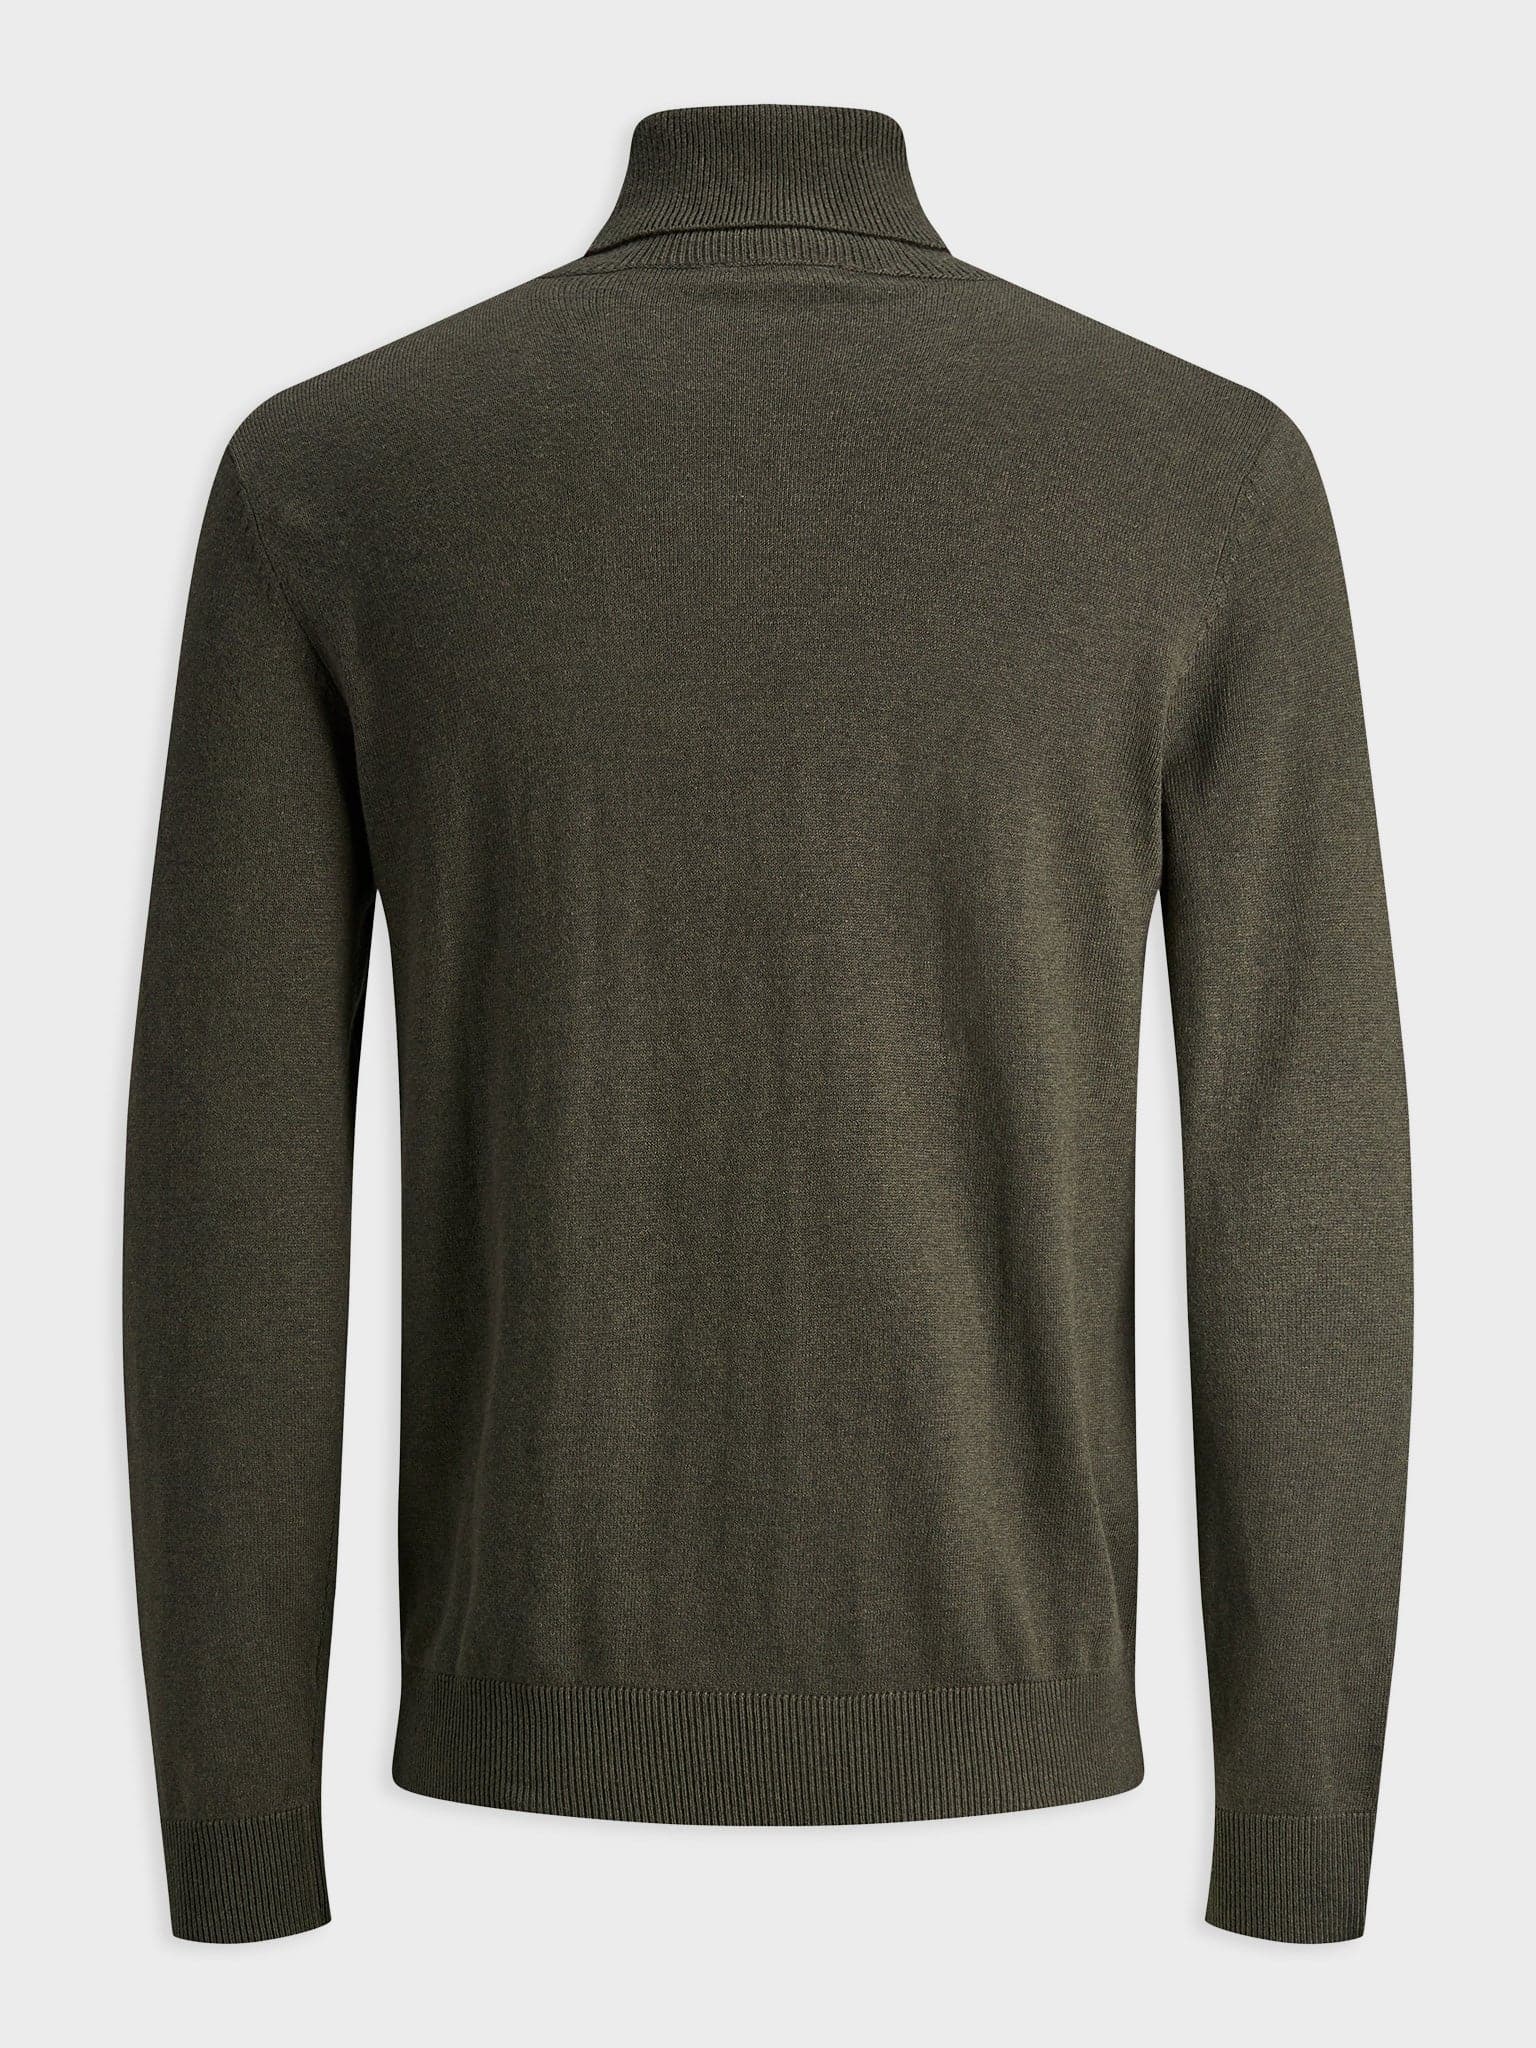 Ανδρική μπλούζα ζιβάγκο JJEEMIL KNIT ROLL NECK NOOS 12157417 | 12157417